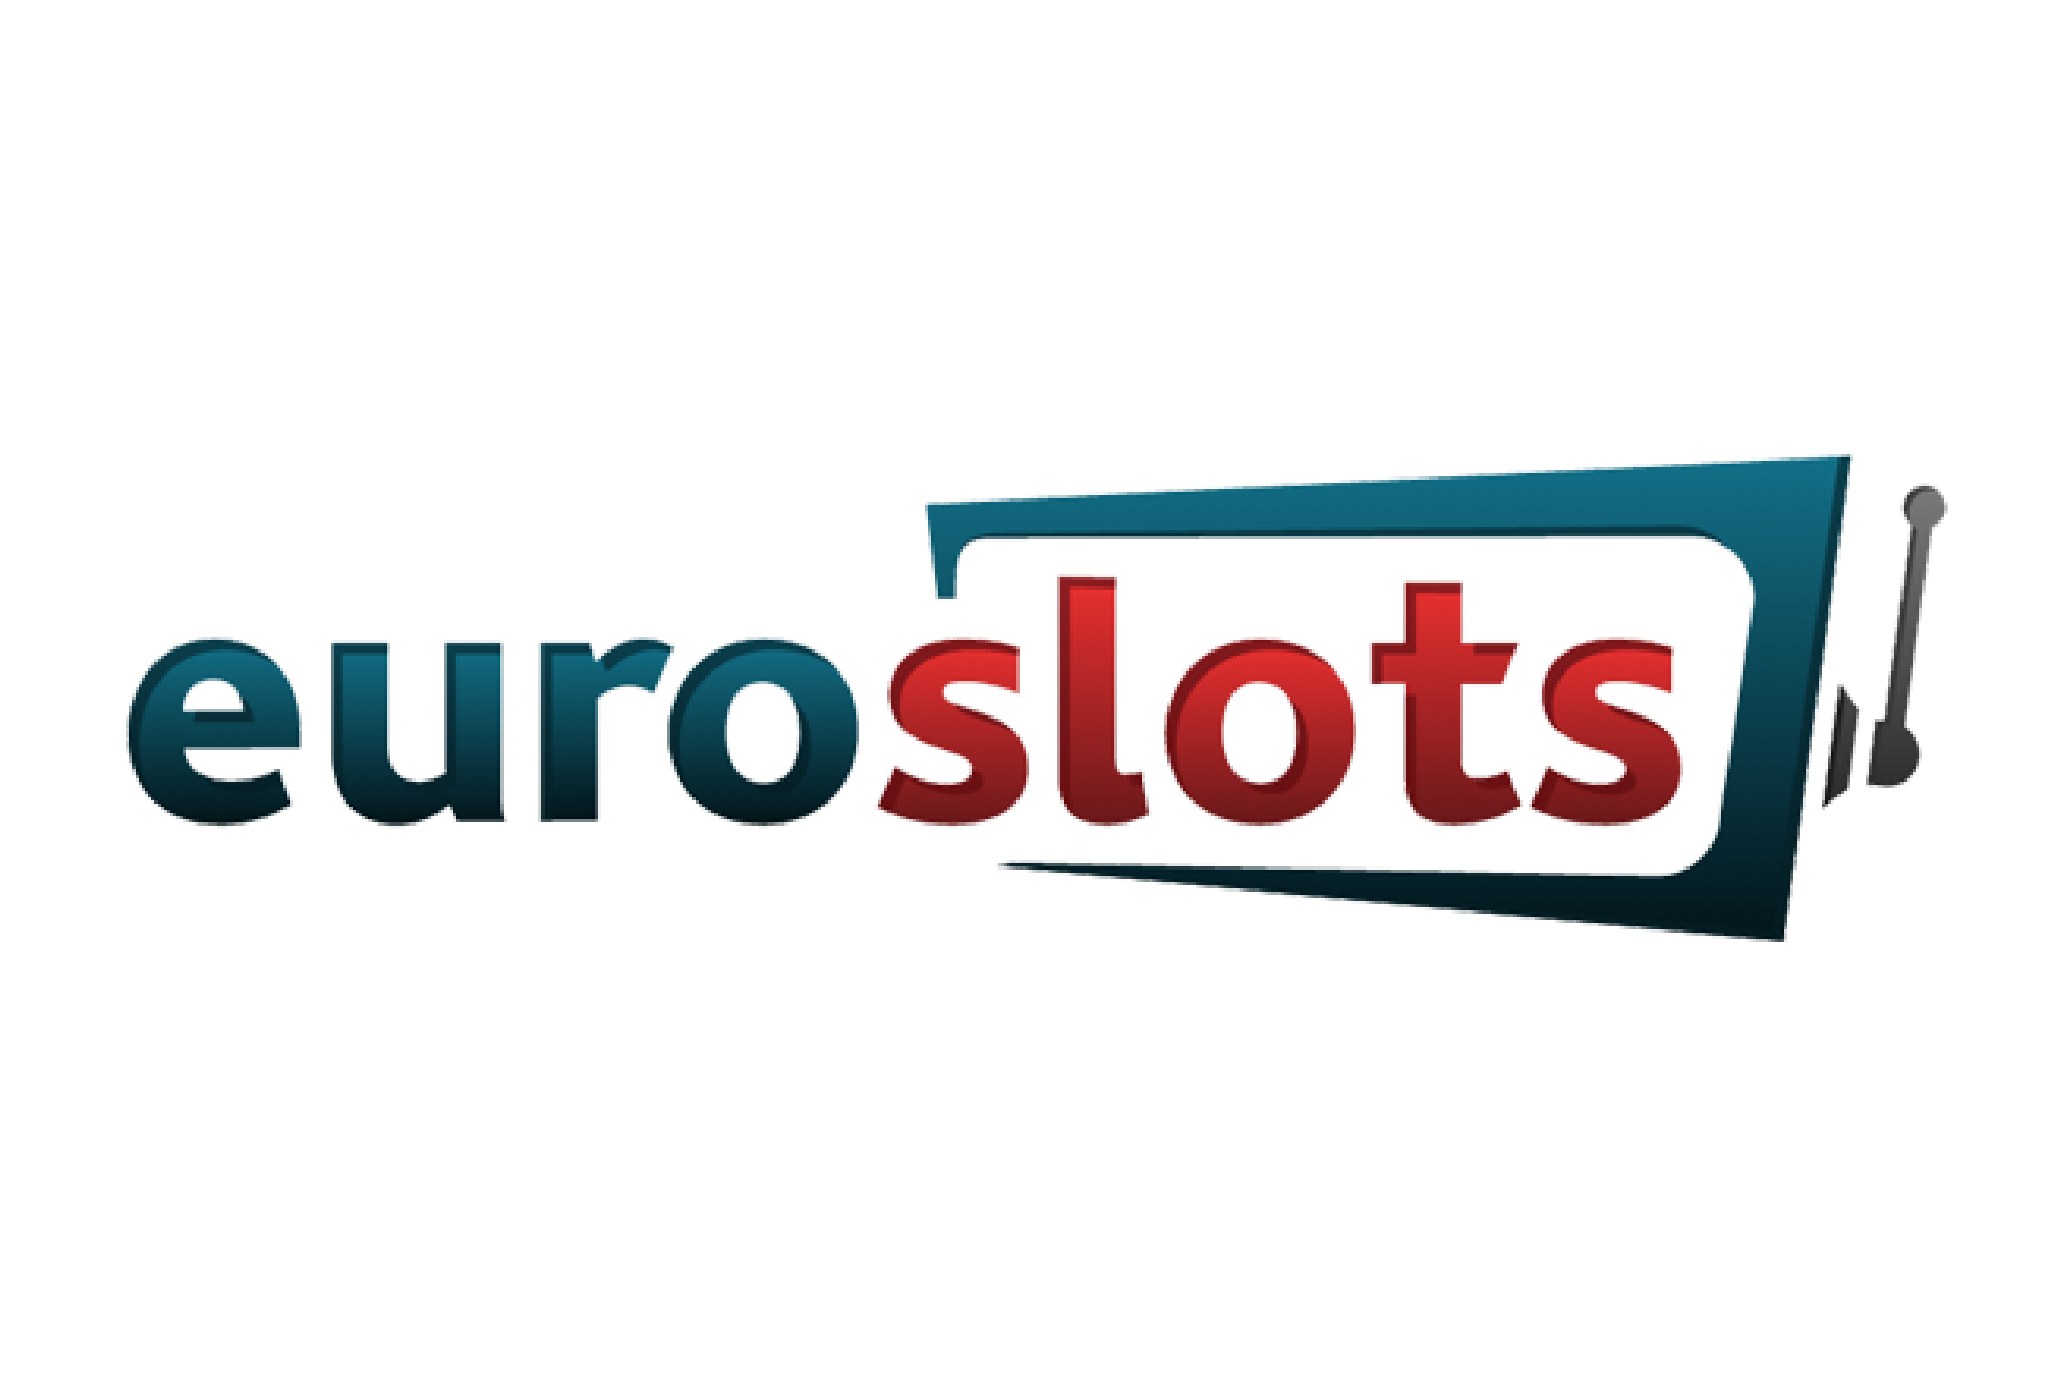 euroslots-logo